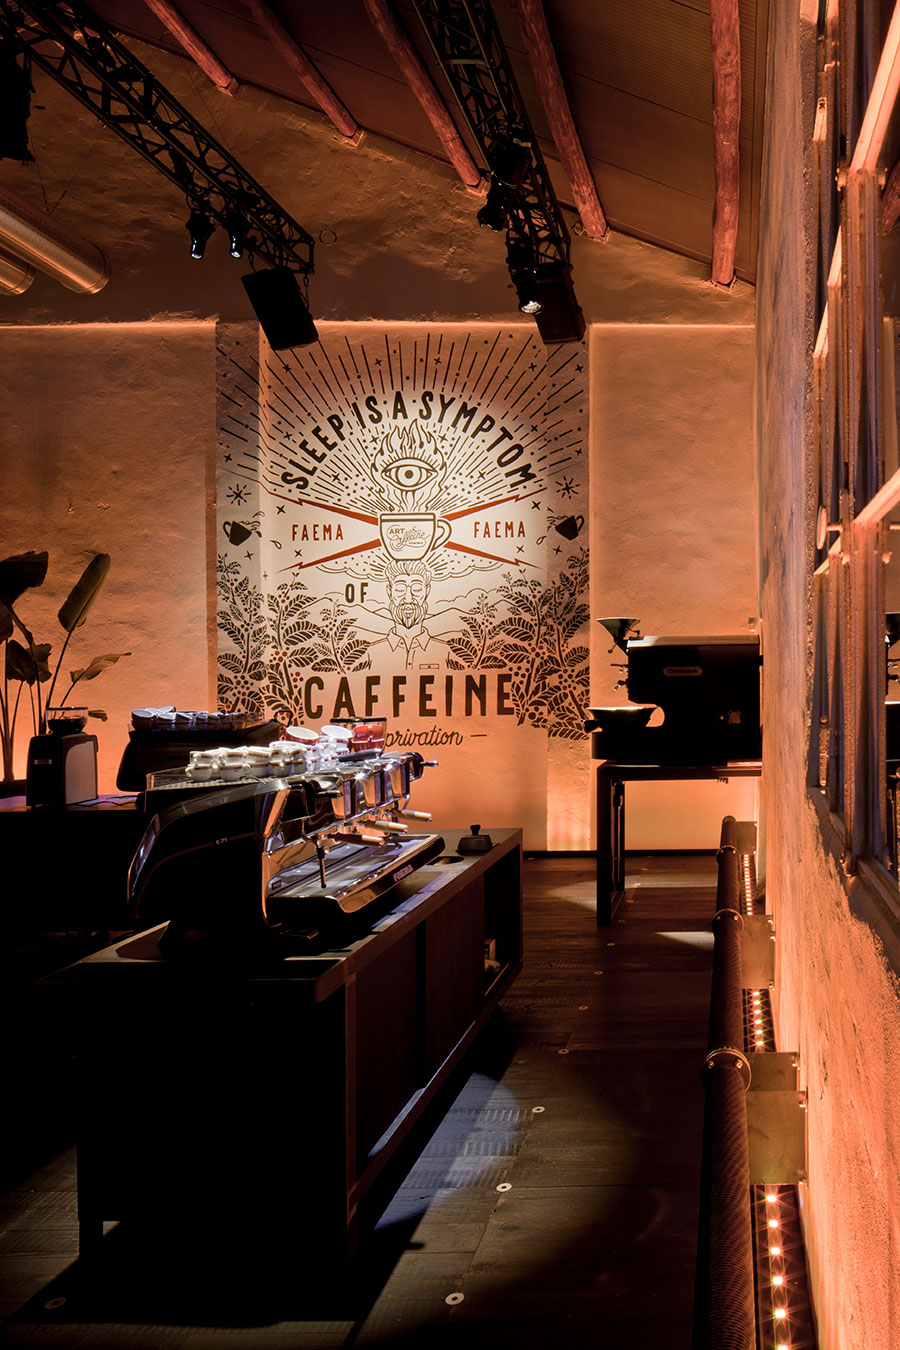 Iluminación Art & Caffeine, Faema Flagship Store